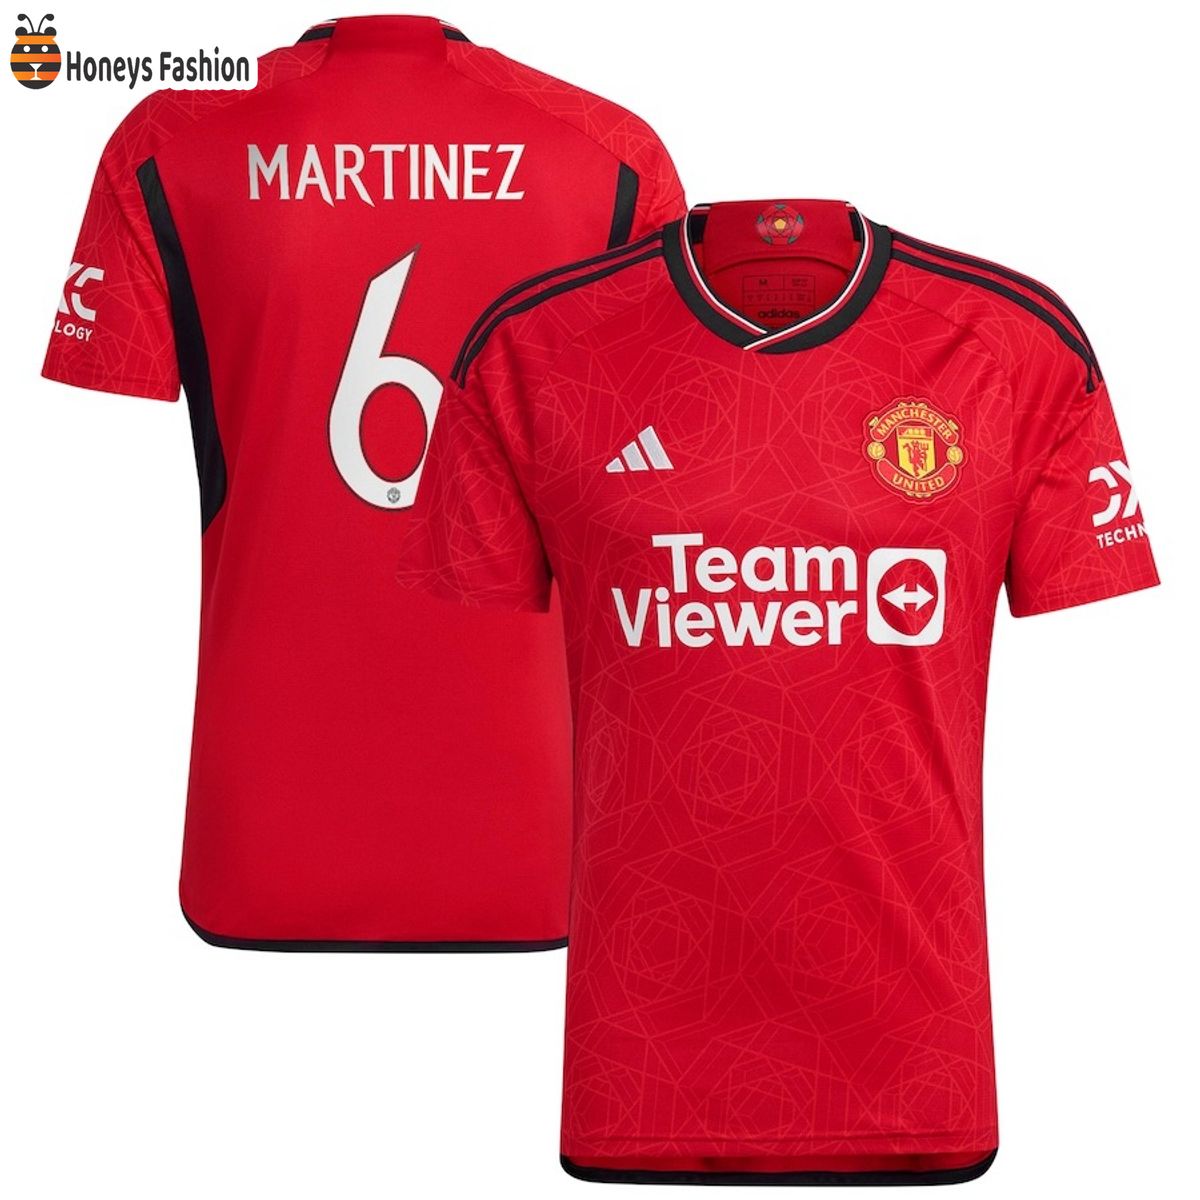 Martinez 6 Manchester United Premier League 23-24 Jersey